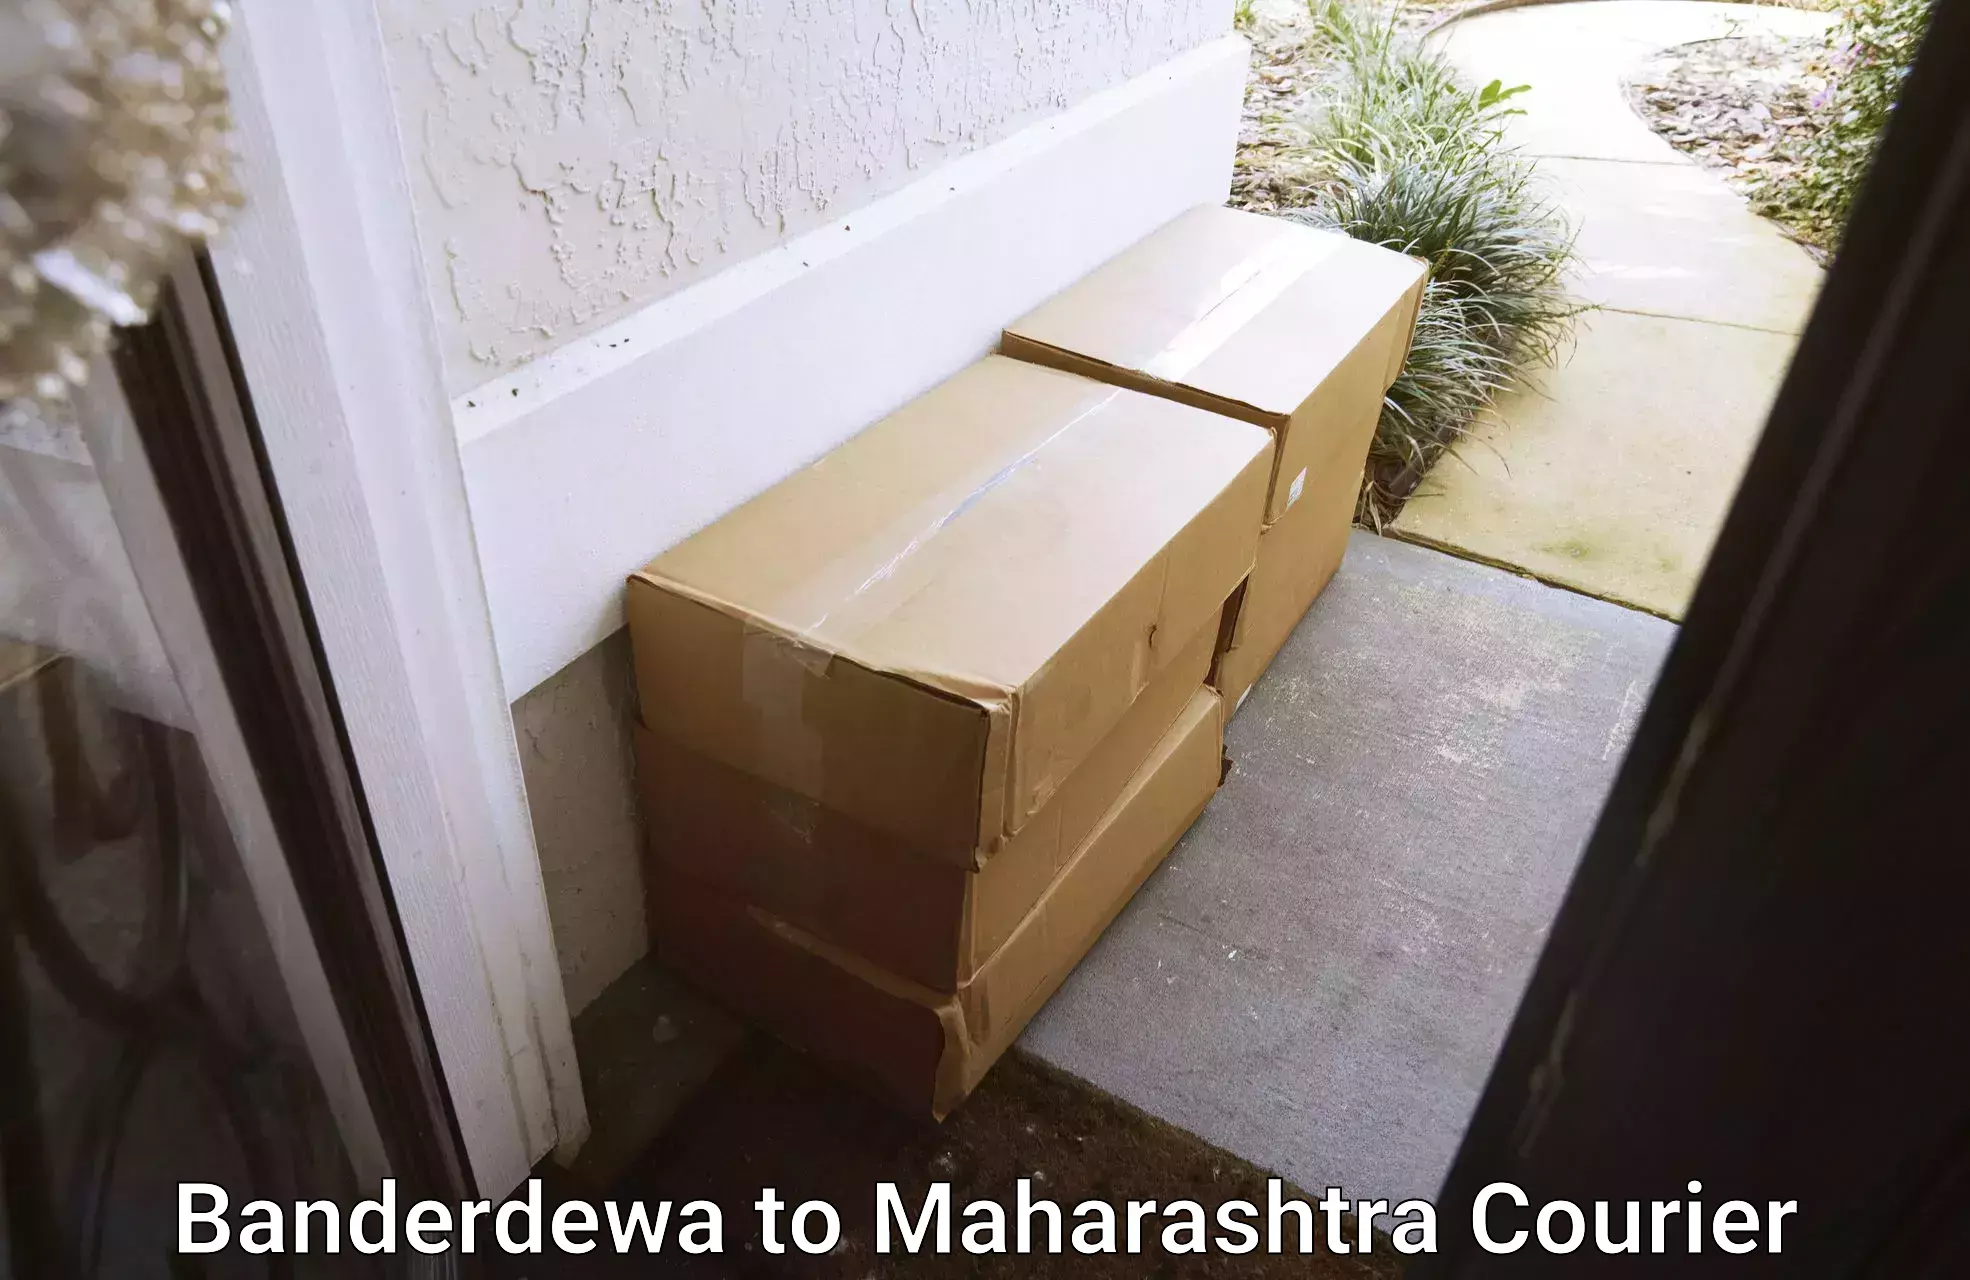 Urgent courier needs Banderdewa to Rahuri